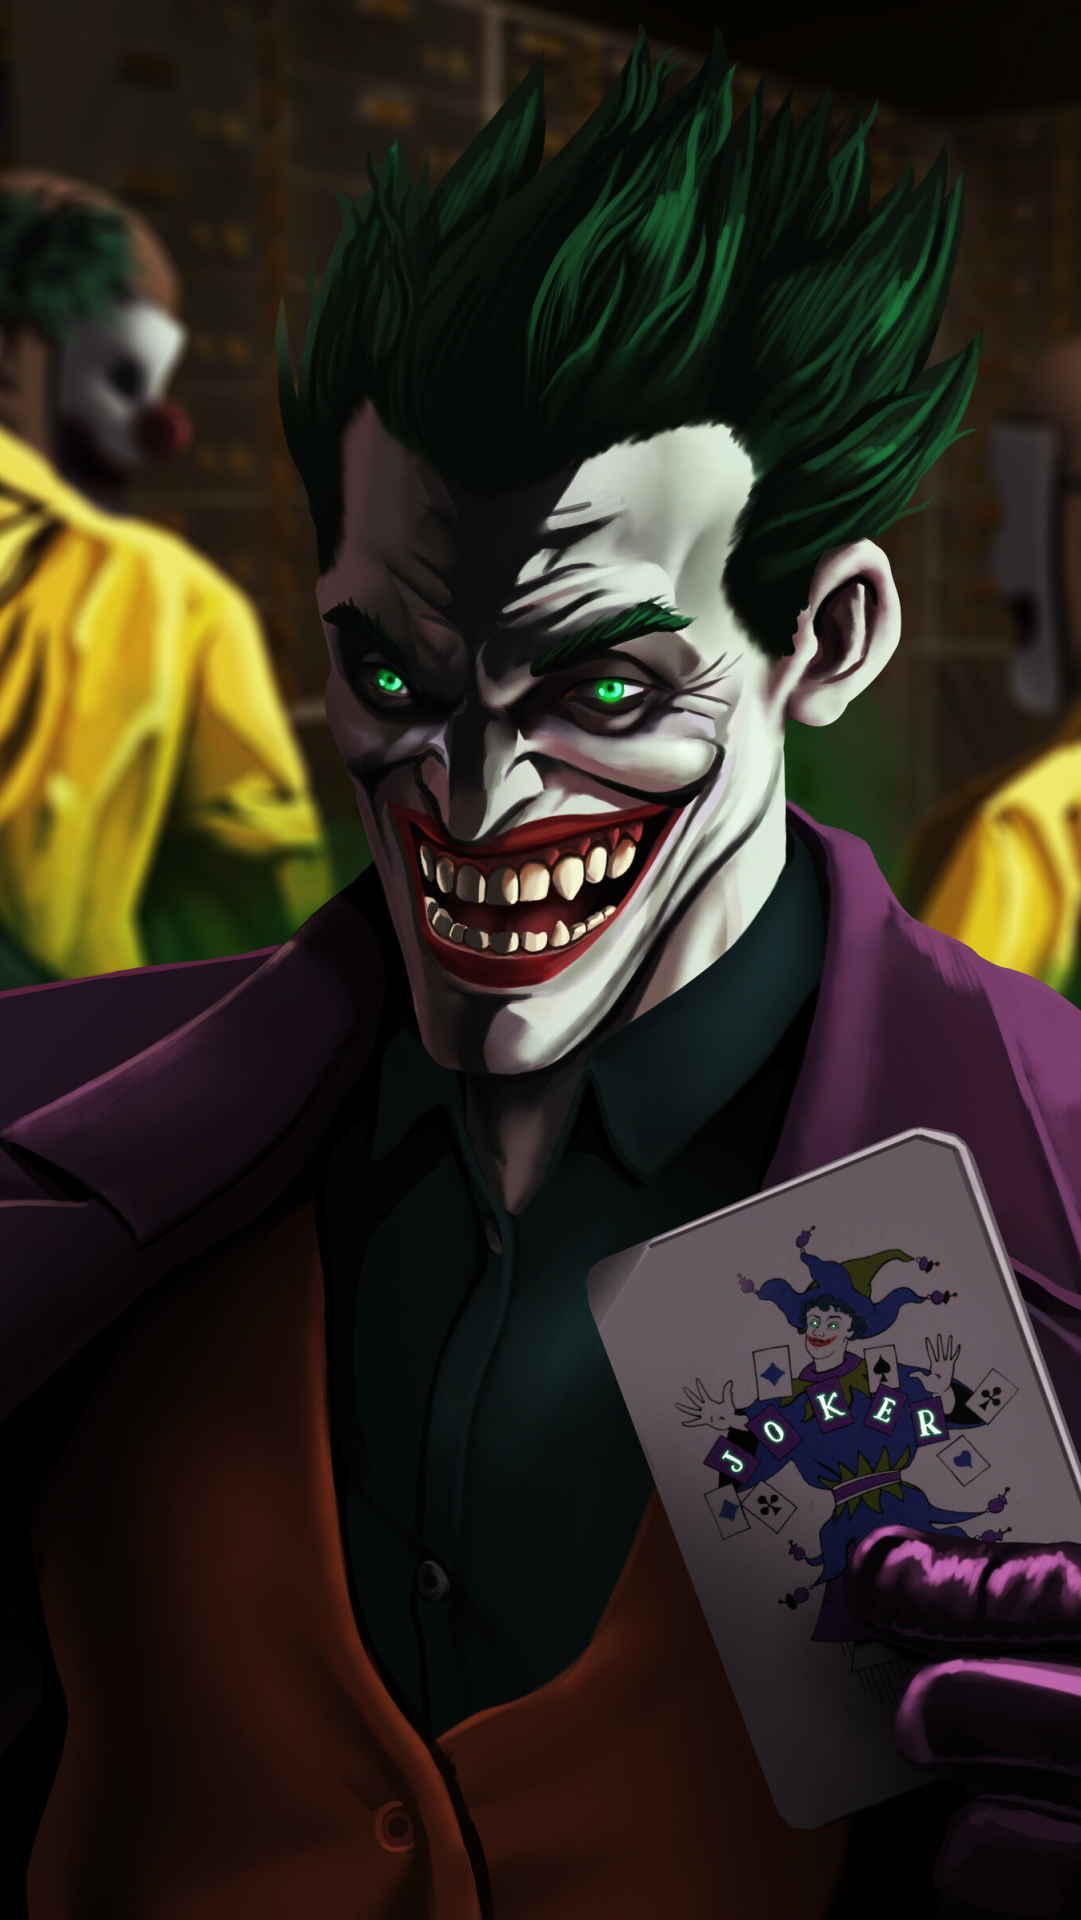 1081x1920 Resolution An Evil Joker Laugh 1081x1920 Resolution Wallpaper ...